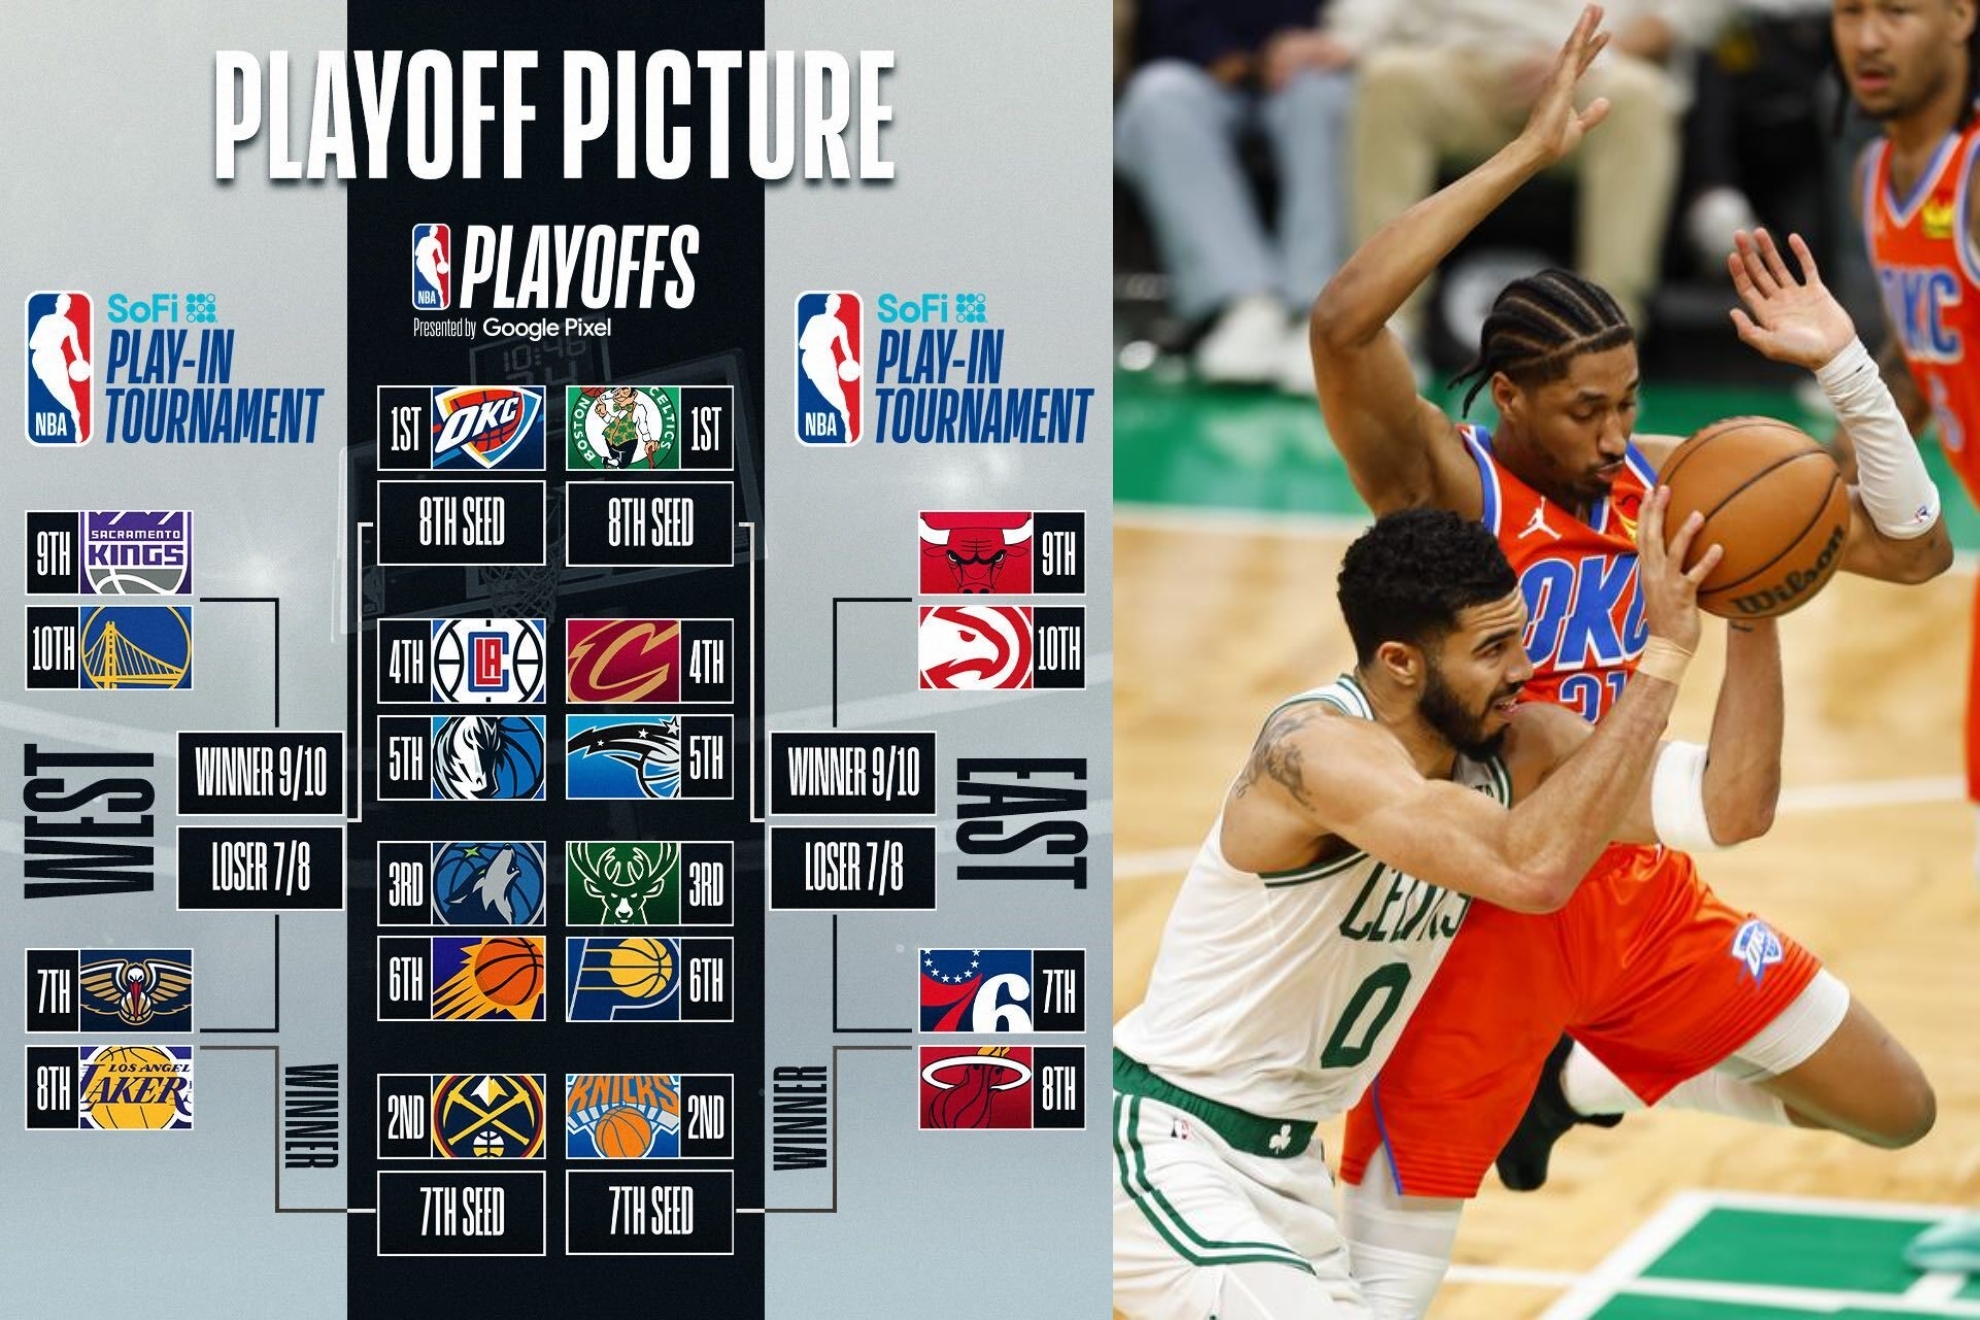 Los Playoffs de la NBA que vienen: Celtics favoritos, la venganza de LeBron... y una derrota forzada?